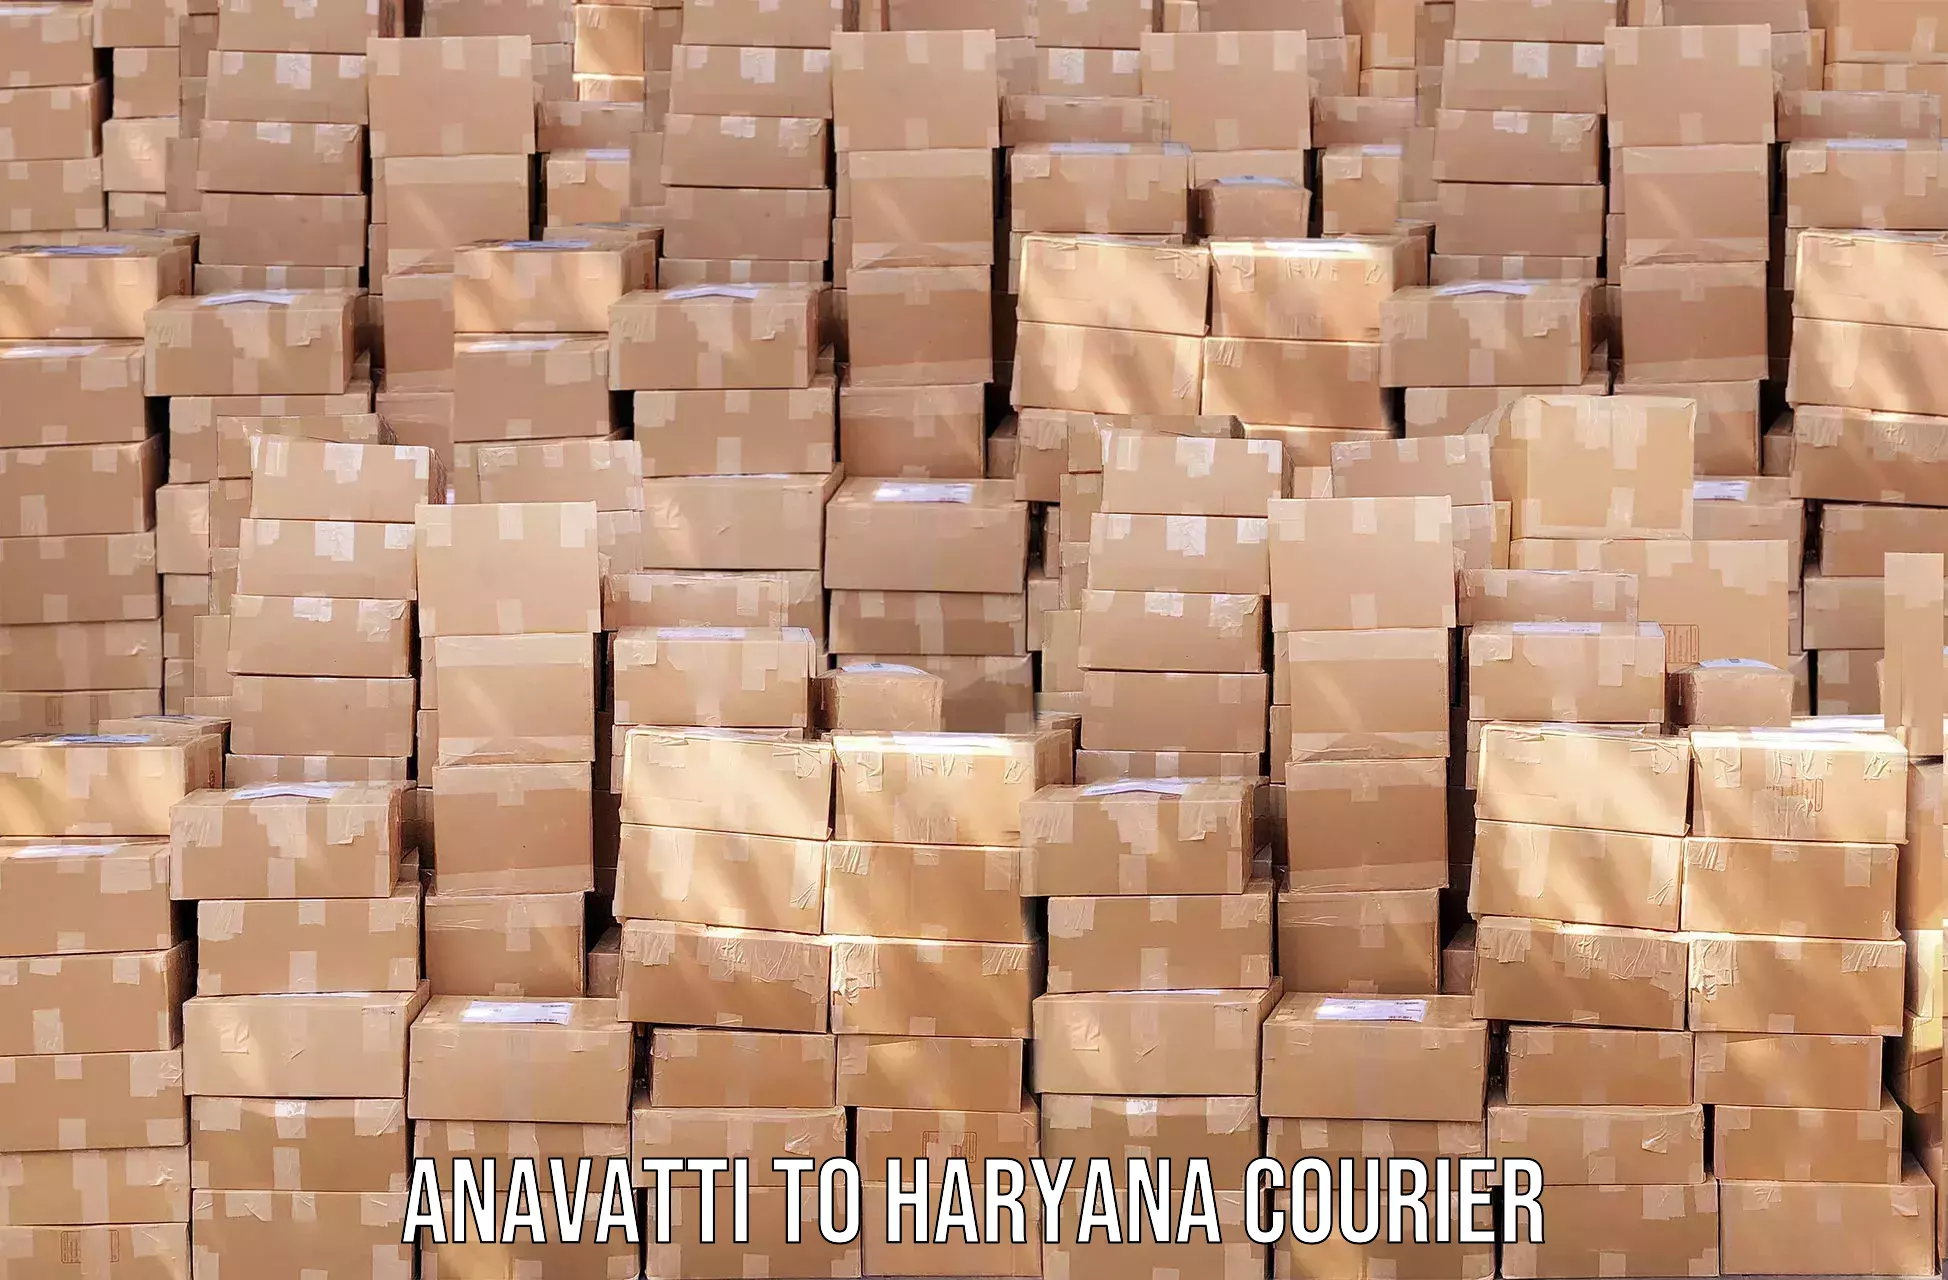 Shipping and handling Anavatti to Chirya